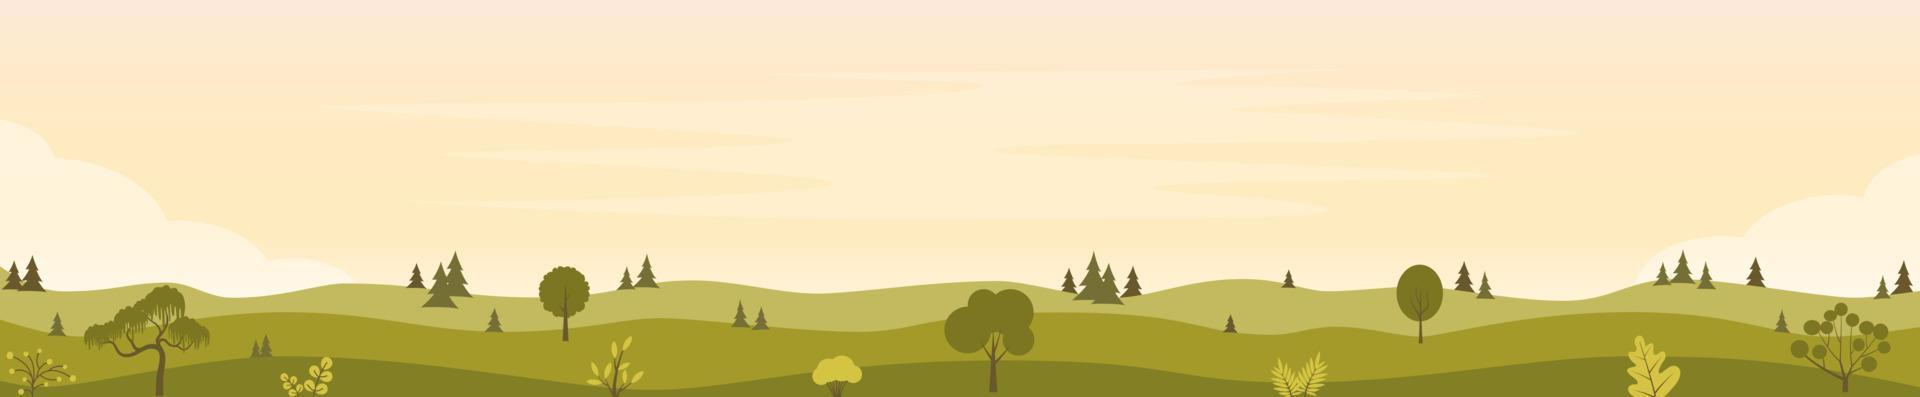 schöne feldlandschaft mit grünen hügeln, bäumen, büschen. ländliche Landschaft in den warmen Morgenfarben. Landschaft Hintergrund horizontale Banner-Vorlage. flache vektorillustration. vektor